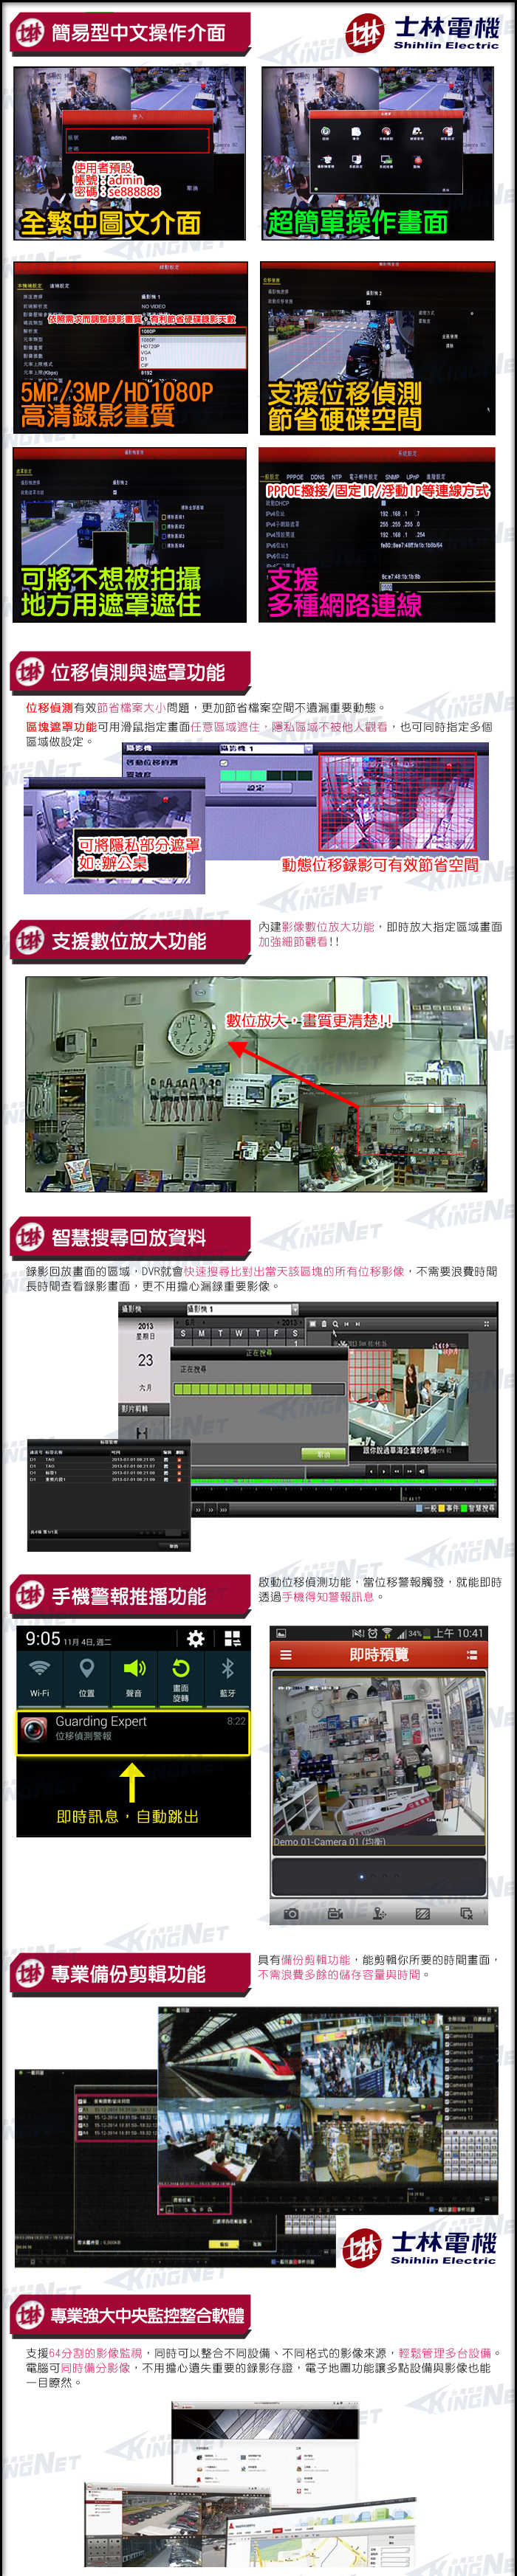 監視器攝影機 KINGNET 士林電機 4路監控主機套餐 高清監控主機+4陣列室內半球OSD監控攝影機x4